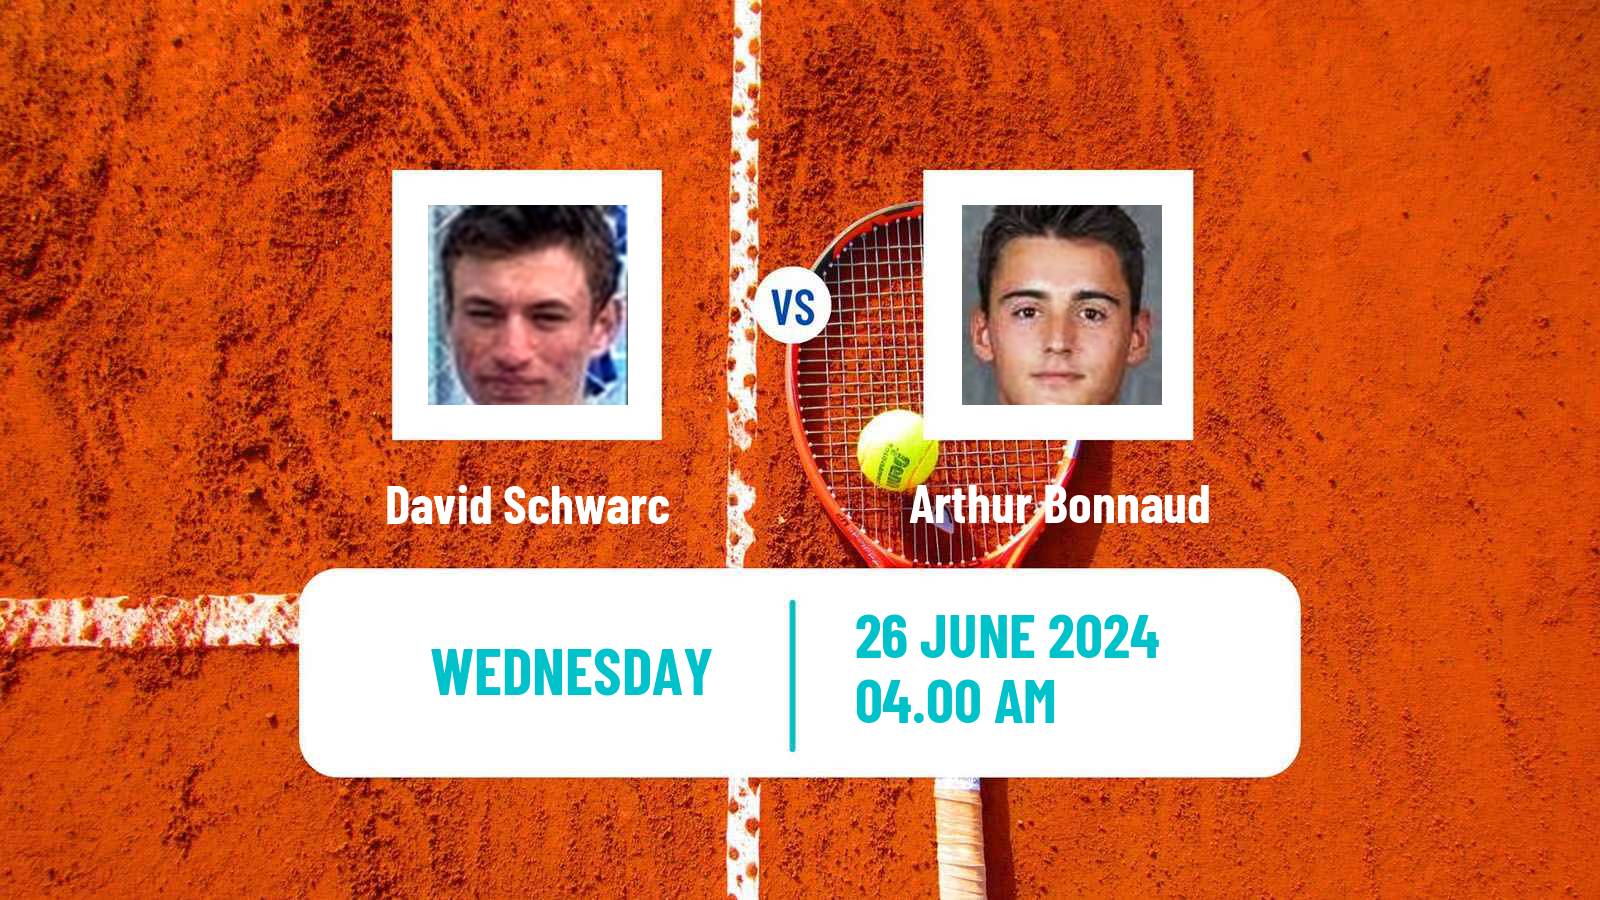 Tennis ITF M15 Wroclaw Men David Schwarc - Arthur Bonnaud